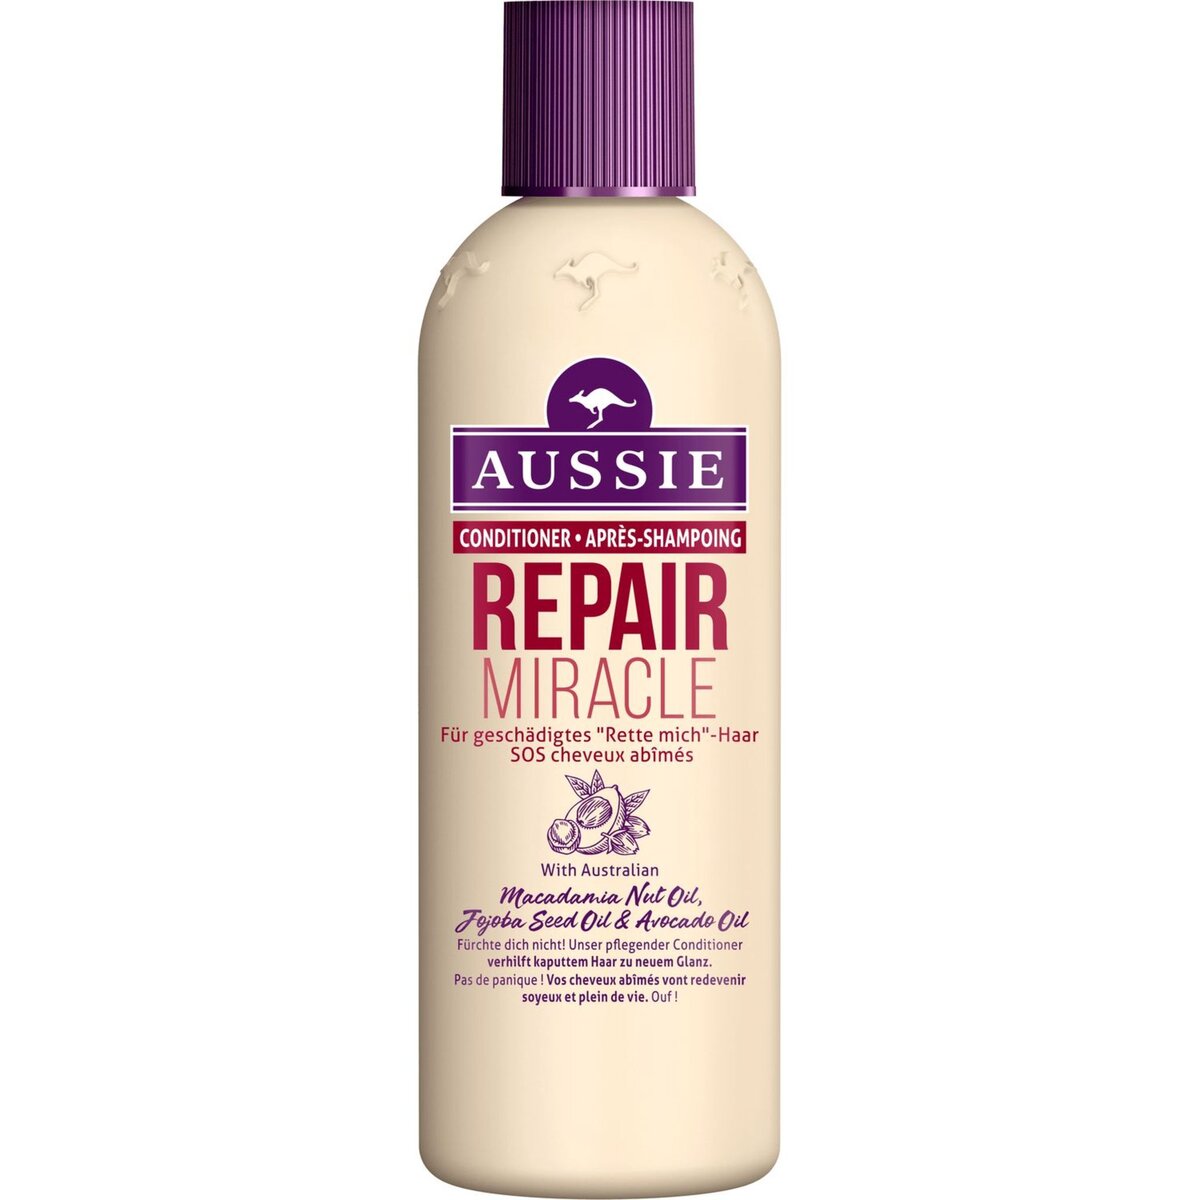 AUSSIE Aussie après-shampooing repair miracle 250ml